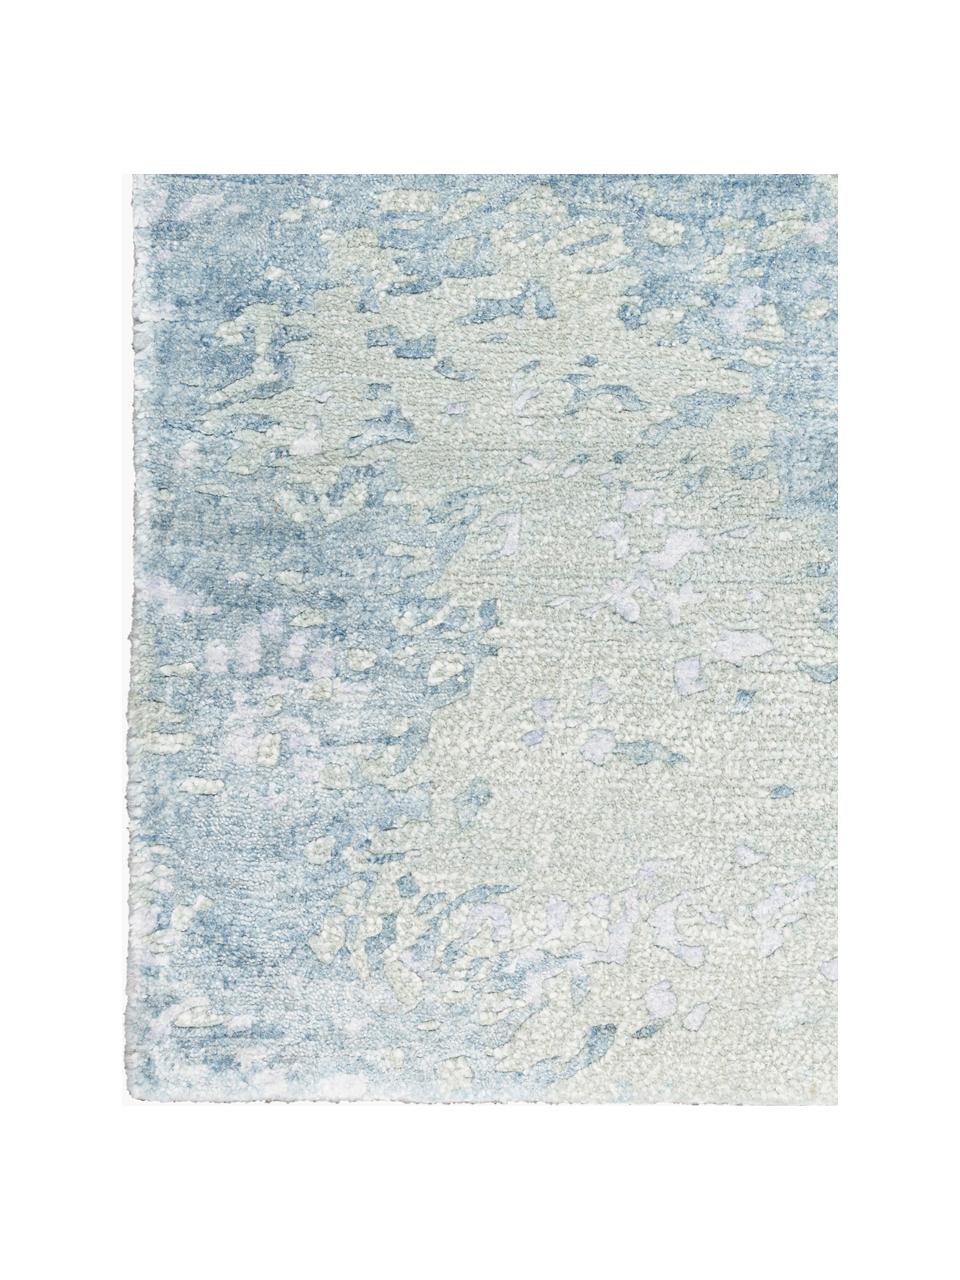 Tappeto in viscosa tessuto a mano Silk Shadows, 75% viscosa, 25% lana neozelandese, Tonalità verdi, tonalità blu, lilla, Larg. 60 x Lung. 90 cm (taglia XS)